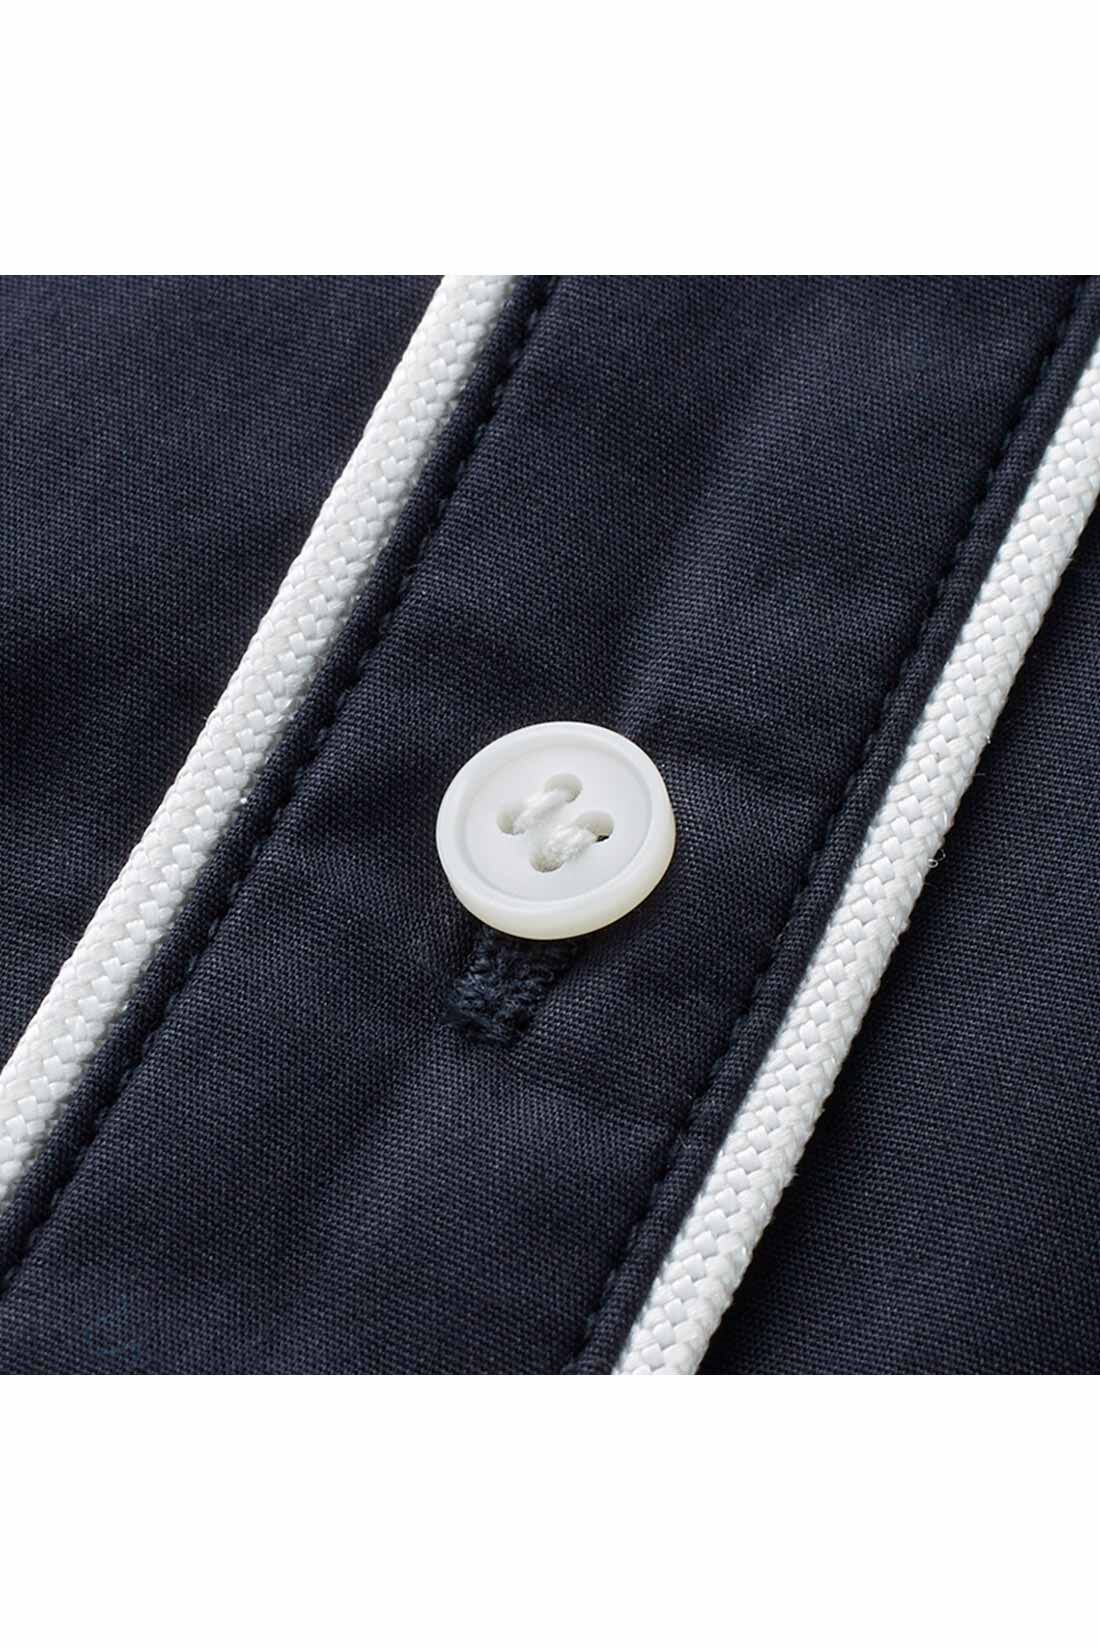 IEDIT|IEDIT[イディット]　コーデのポイントになる きれいめパイピングシャツ〈ネイビー〉|白いパイピングテープとボタンが、清潔感＆華やかなアクセントに。 ※お届けするカラーとは異なります。